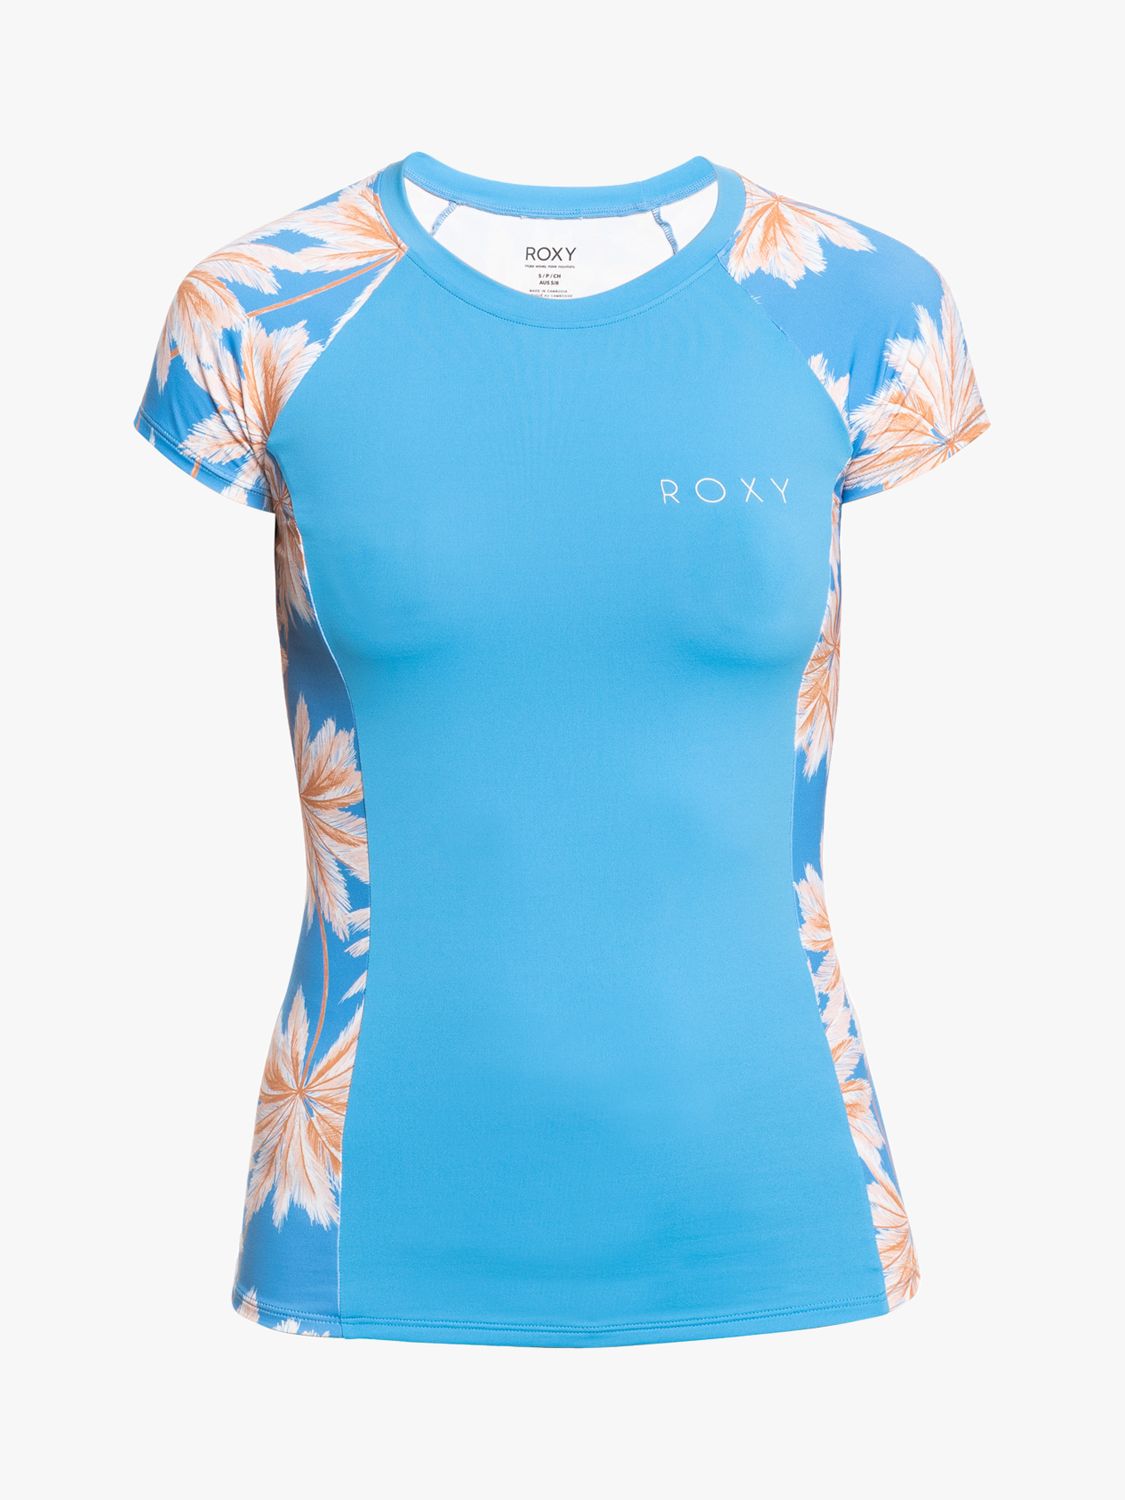 Roxy Floral Stretch Rash Vest, Blue/Multi, S